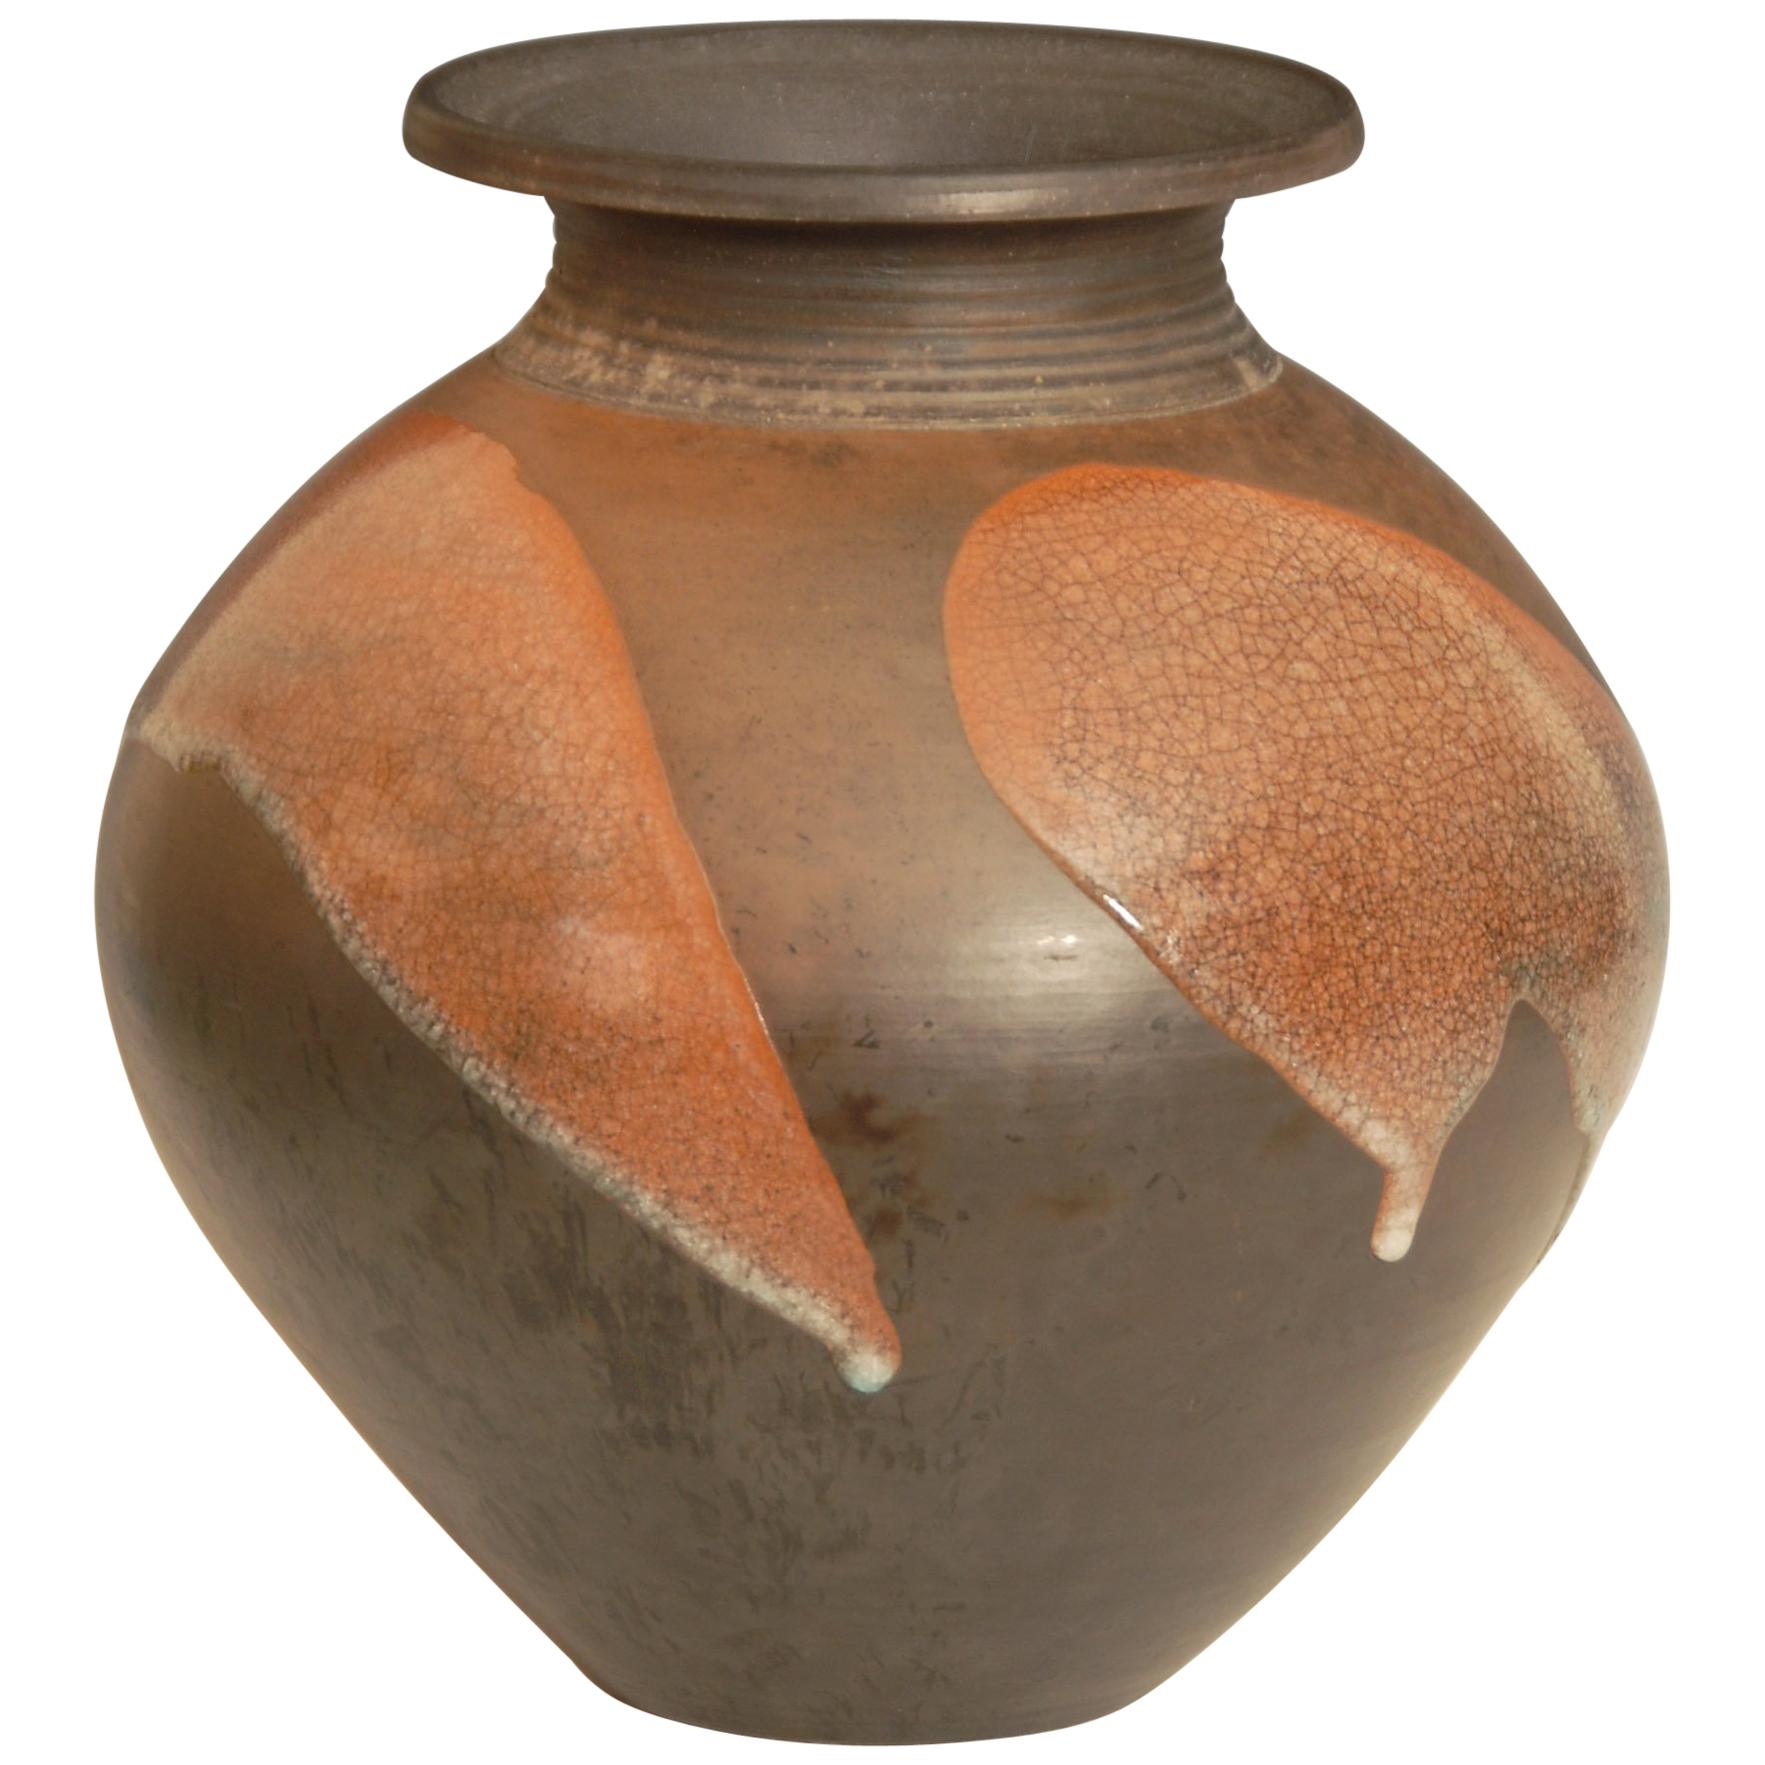 Large Burnished Raku Pot or Vase with Crackle Glaze by Tim Andrews UK For Sale